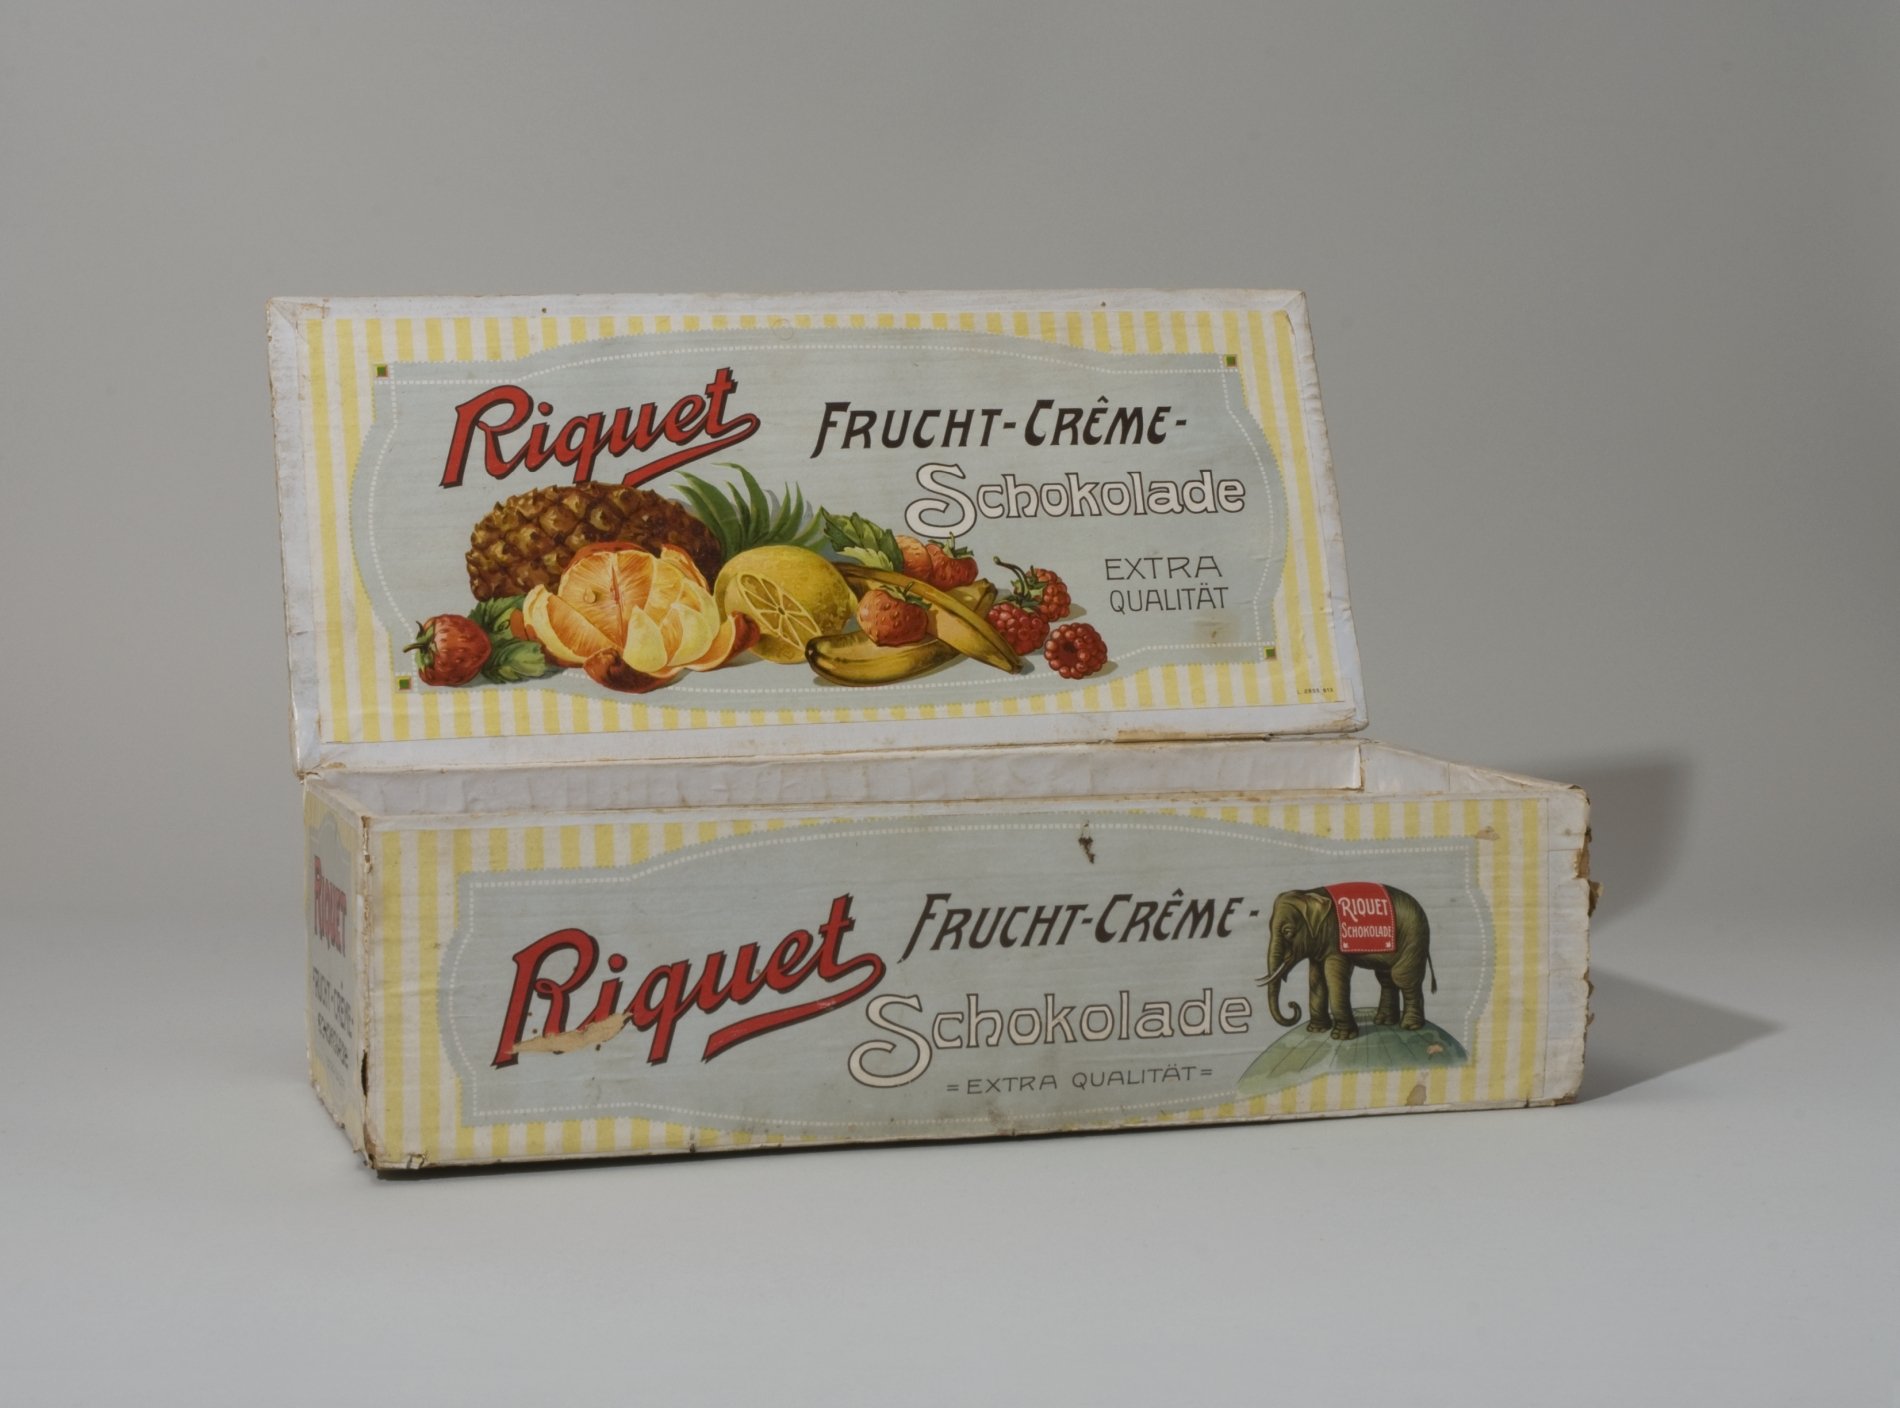 Holzkiste "Riquet Frucht-Creme-Schokolade" (Stiftung Domäne Dahlem - Landgut und Museum, Weiternutzung nur mit Genehmigung des Museums CC BY-NC-SA)